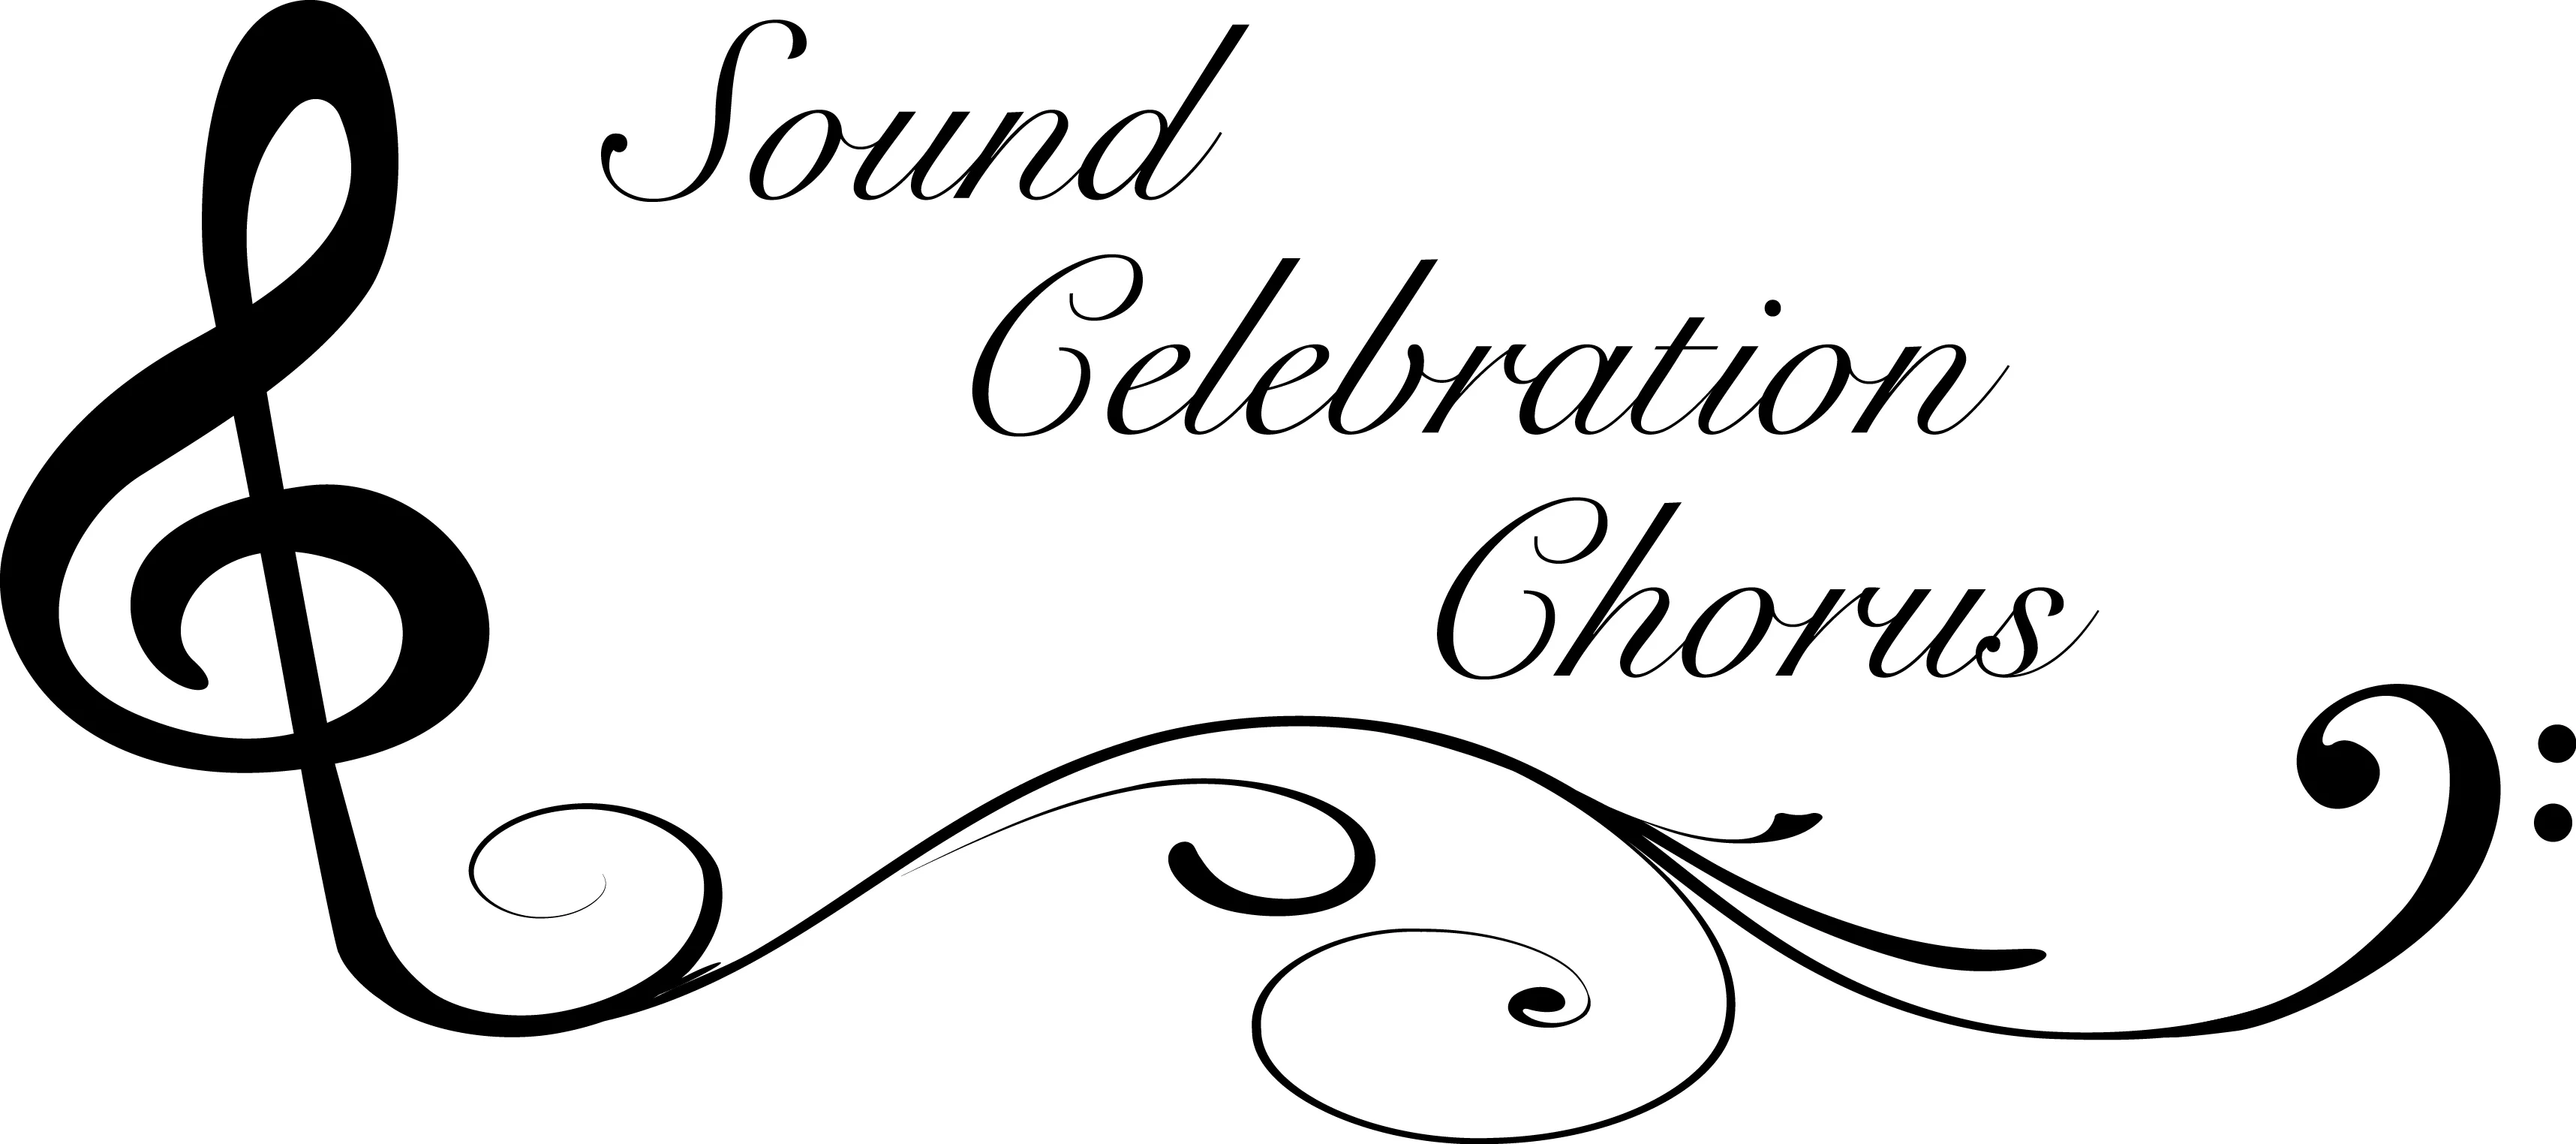 sound_celebration_chorus_logo-2017-jpg